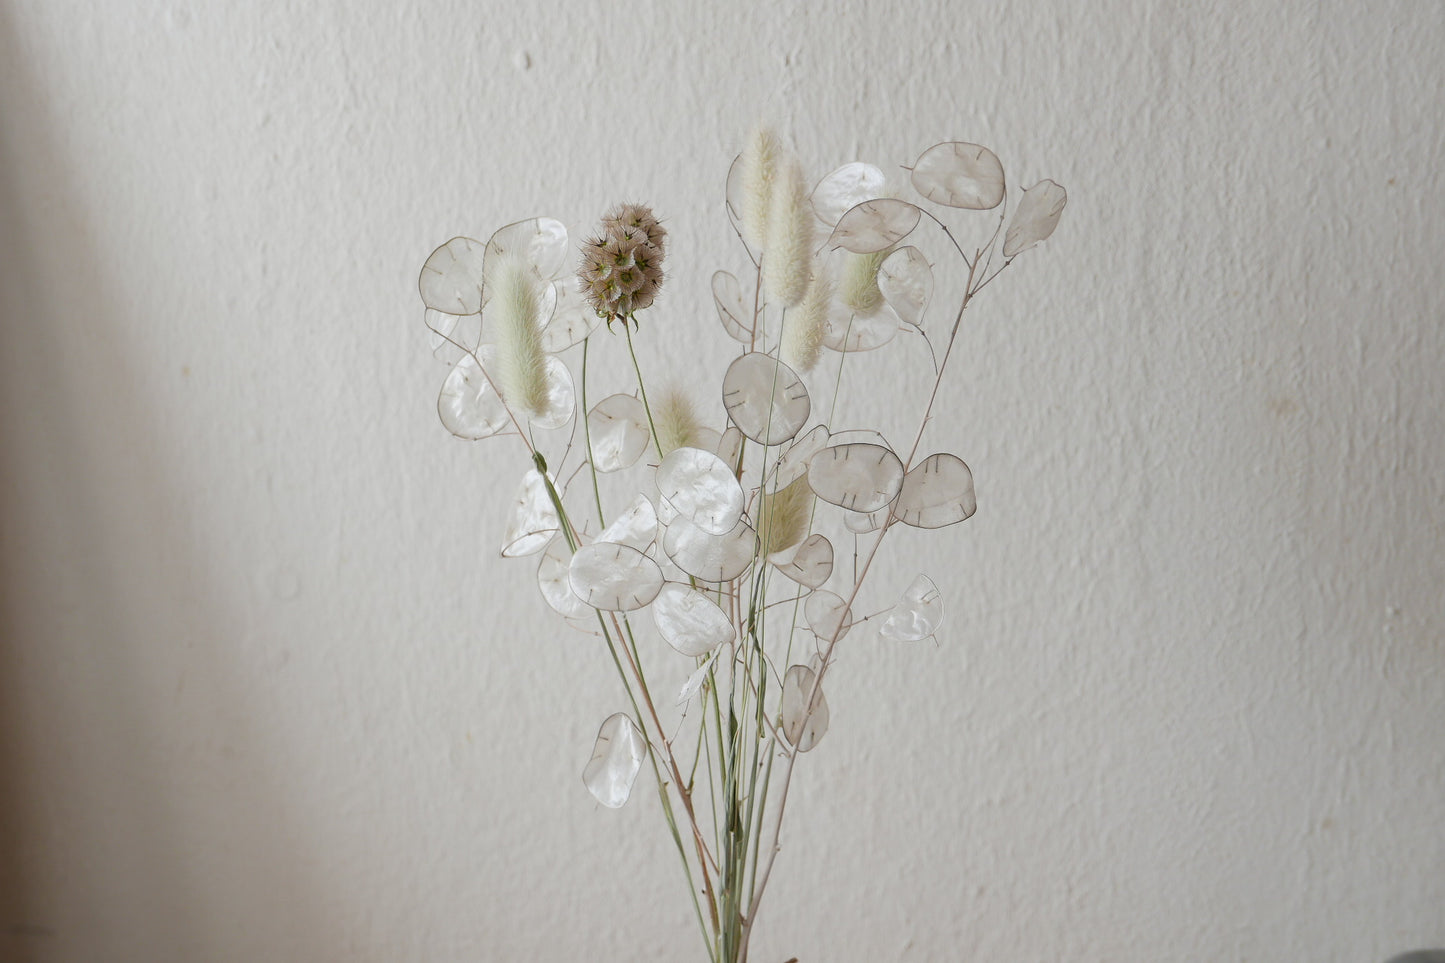 Kleiner Trockenblumenmix 'Lunaria' (Bio)